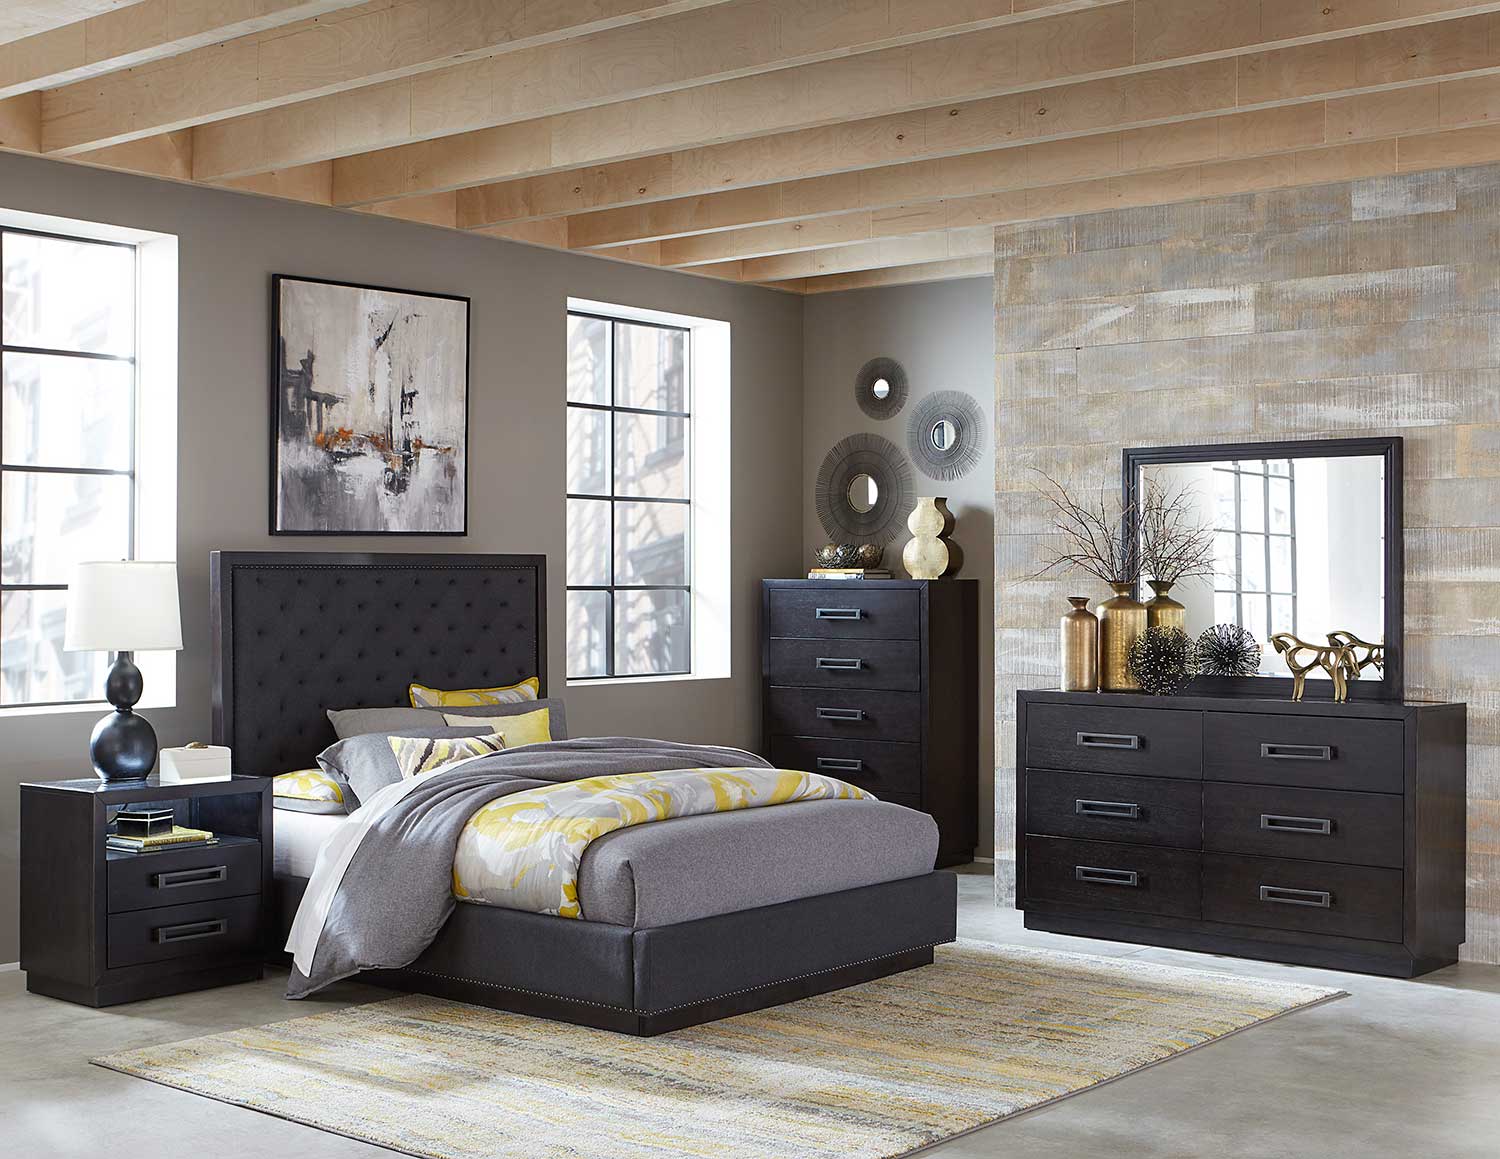 Homelegance Larchmont Bedroom Set - Charcoal Finish over Ash Veneer